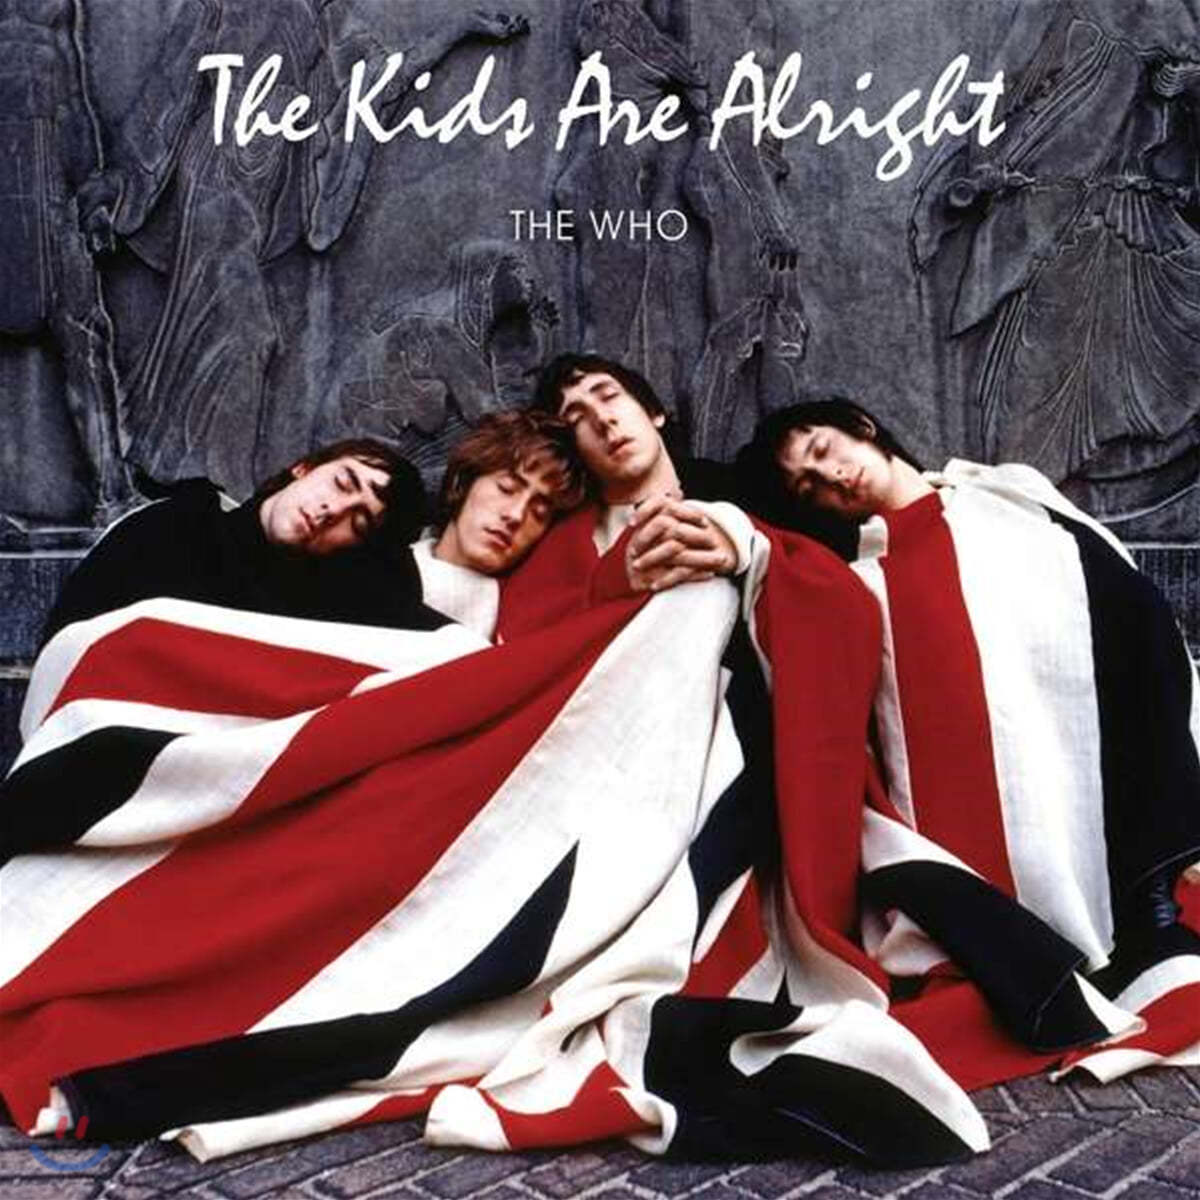 더 후 &#39;더 키즈 아 올라이트&#39; 다큐멘터리 음악 (The Kids Are Alright by The Who) [2LP]